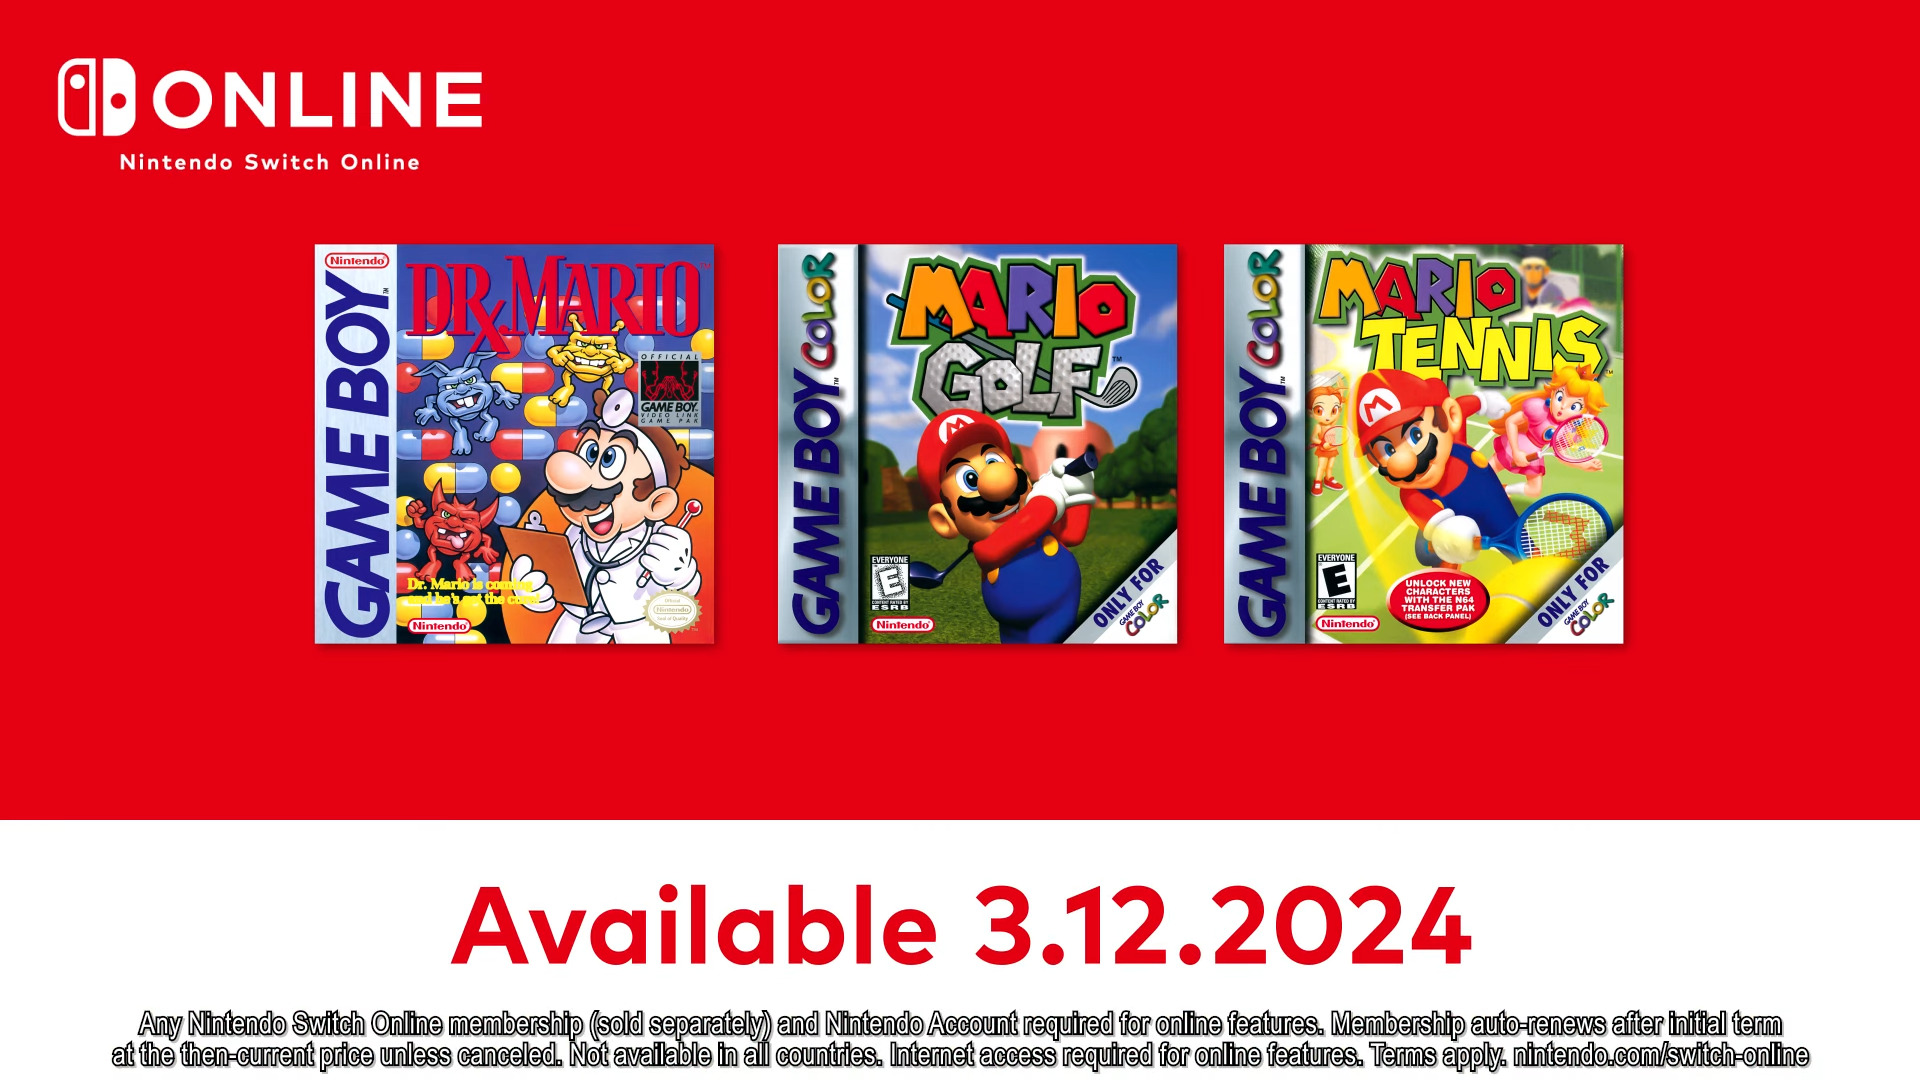 Le 12 mars, le catalogue Nintendo Switch Online s'enrichira de trois projets Mario de l'ère Game Boy